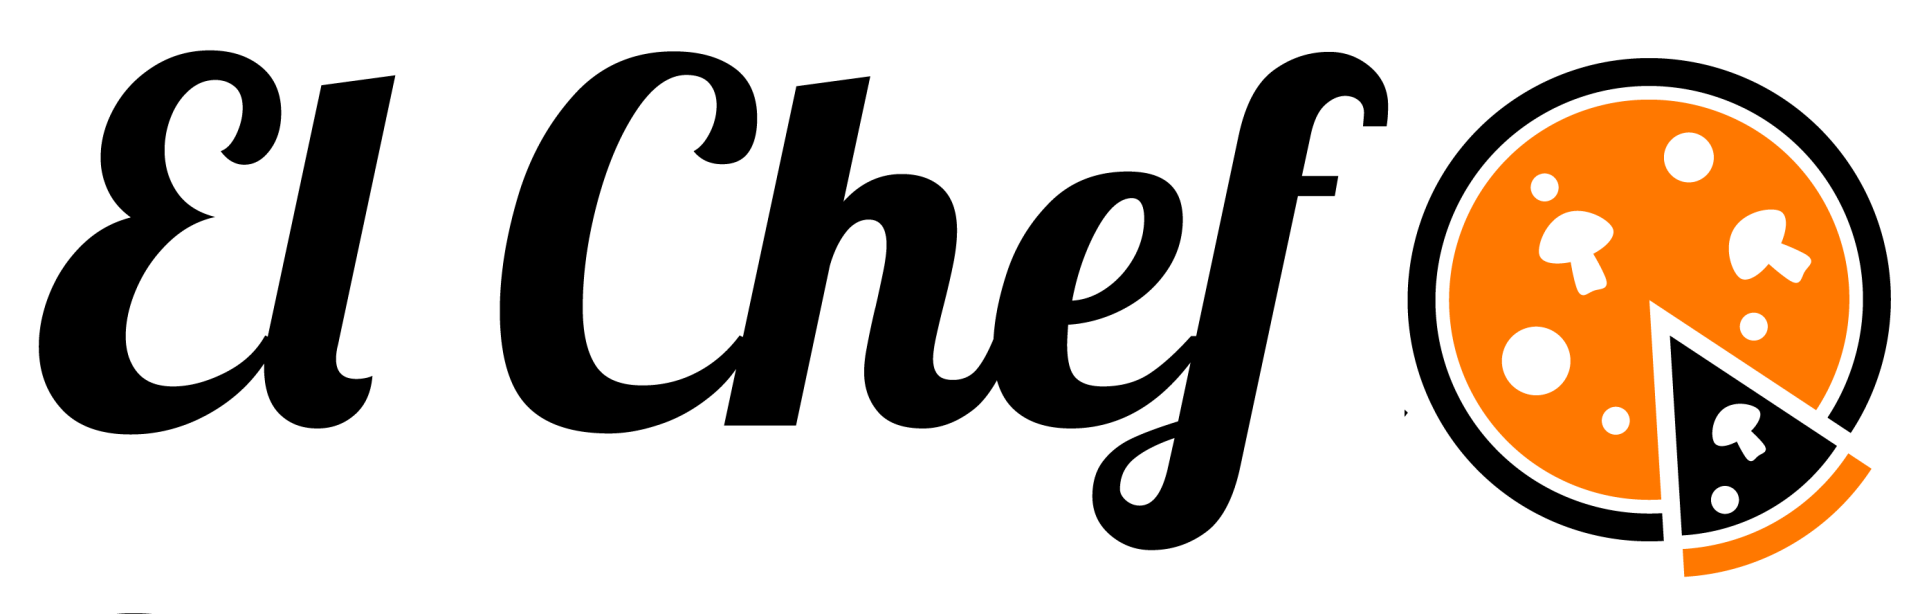 Logo El Chef Pizzaria - Demo Pedidos Online